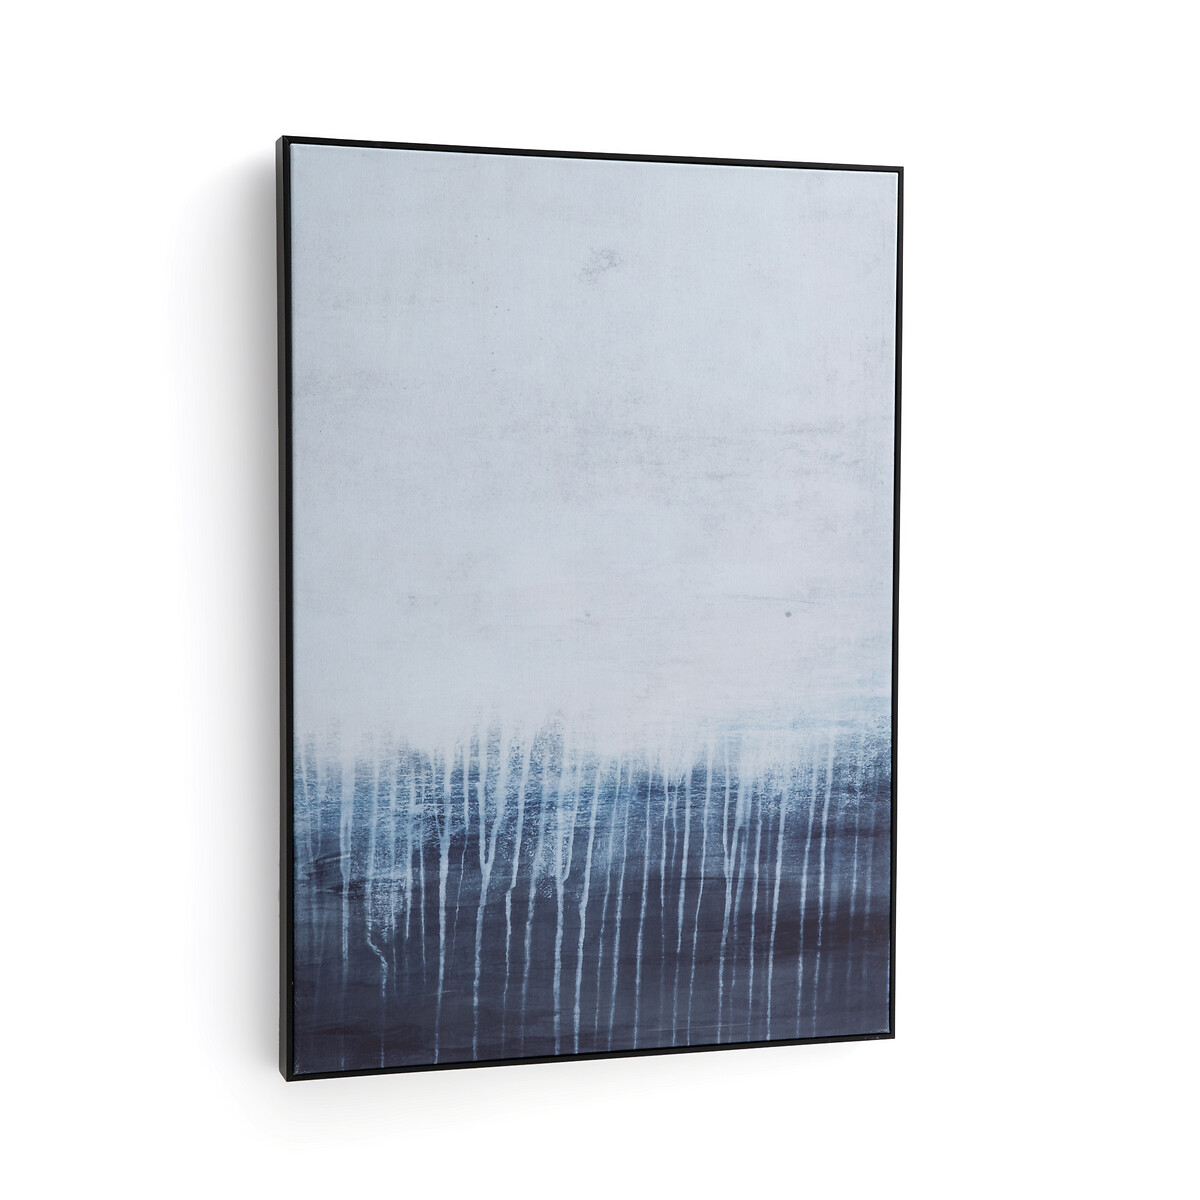 Kunstdruck Azul auf Leinen, 70 x 100 cm von LA REDOUTE INTERIEURS